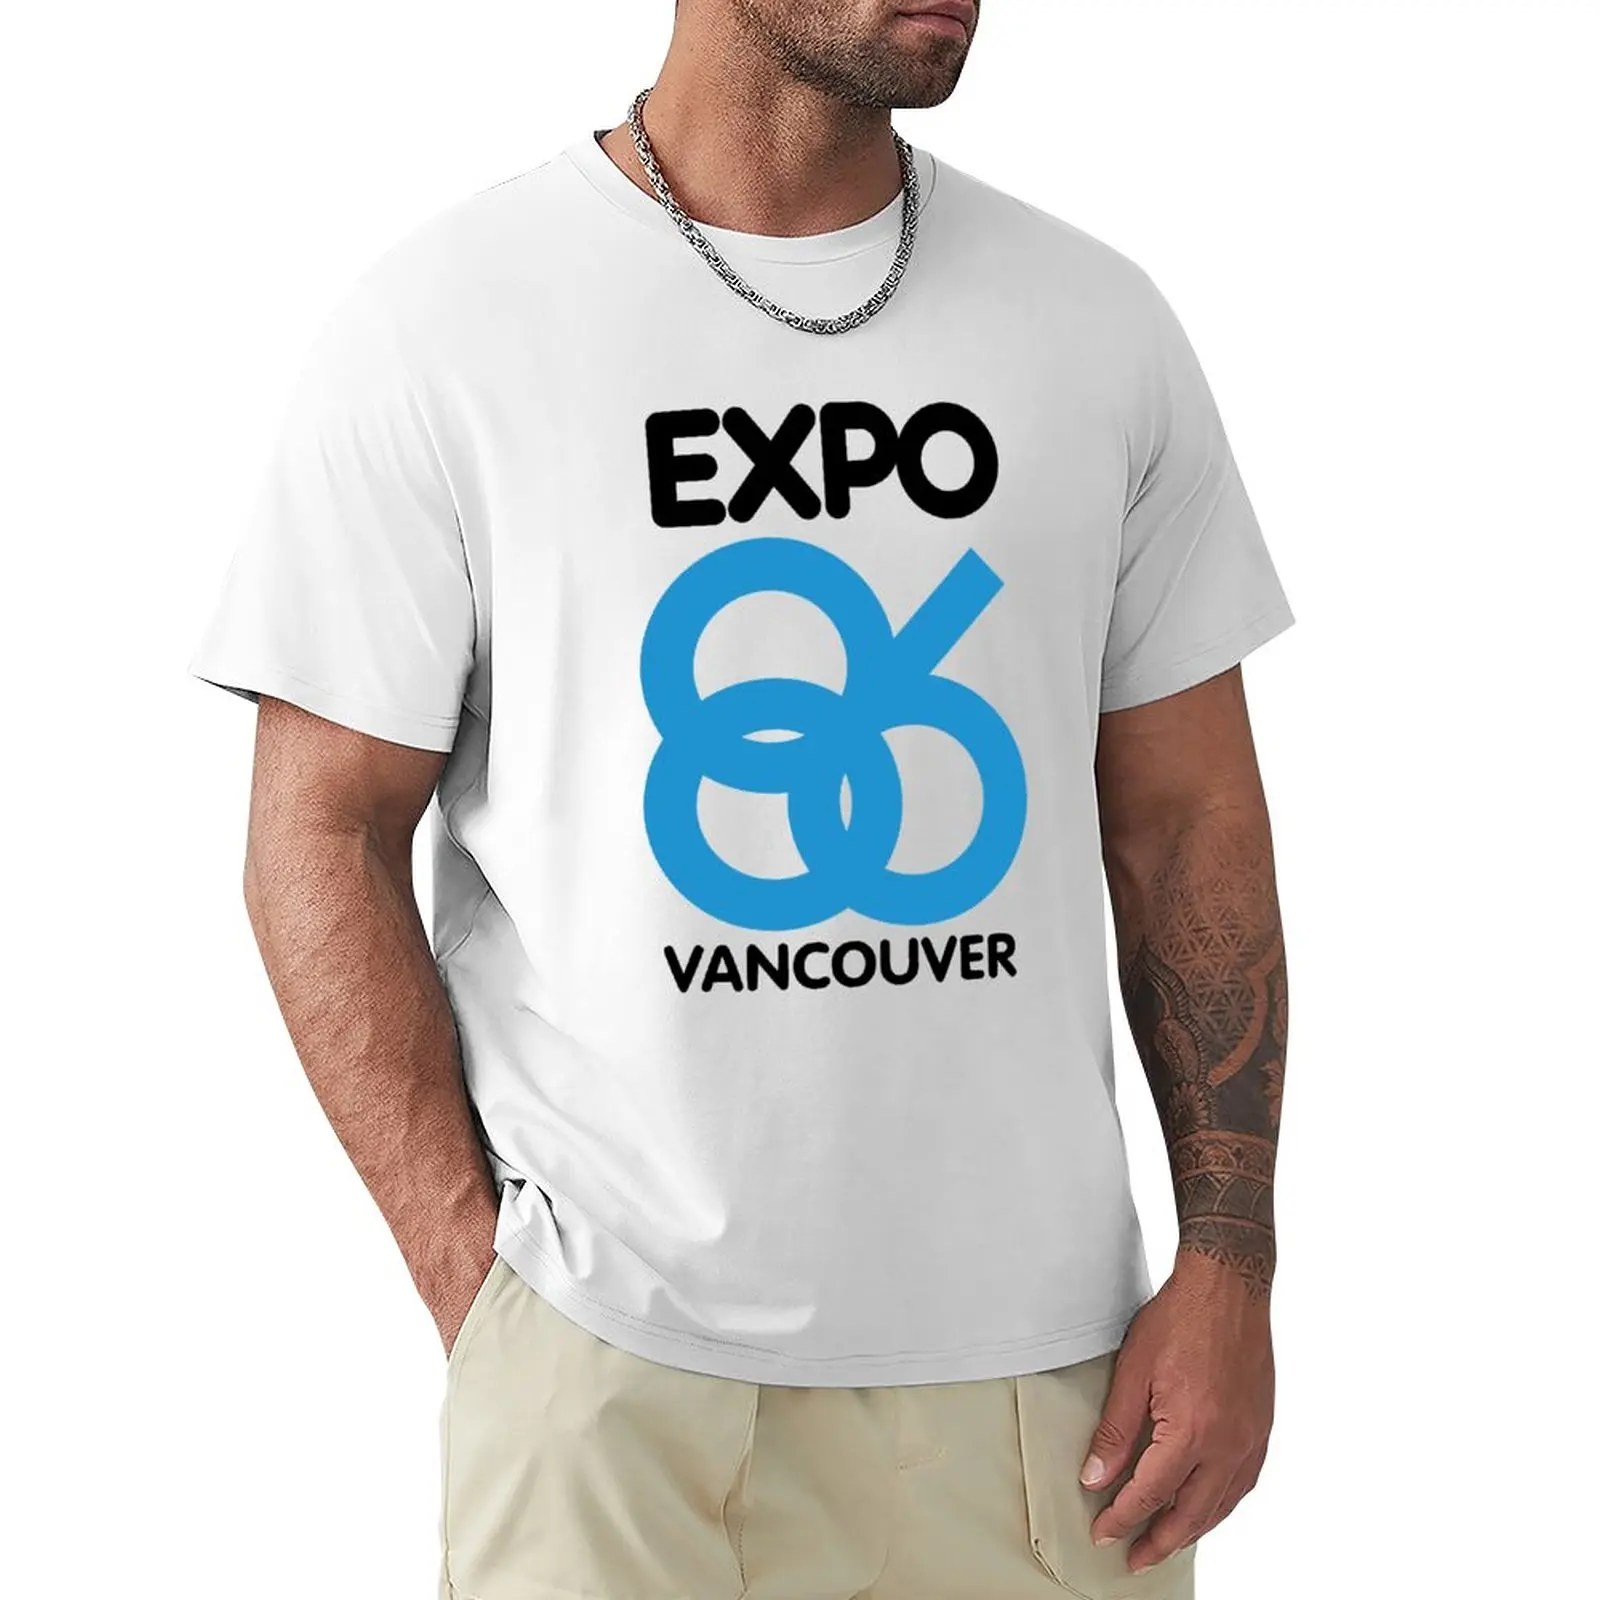 

Vancouver world's fair expo 1986 T-Shirt boys t shirts Short sleeve quick-drying t-shirt black t shirt men t shirts